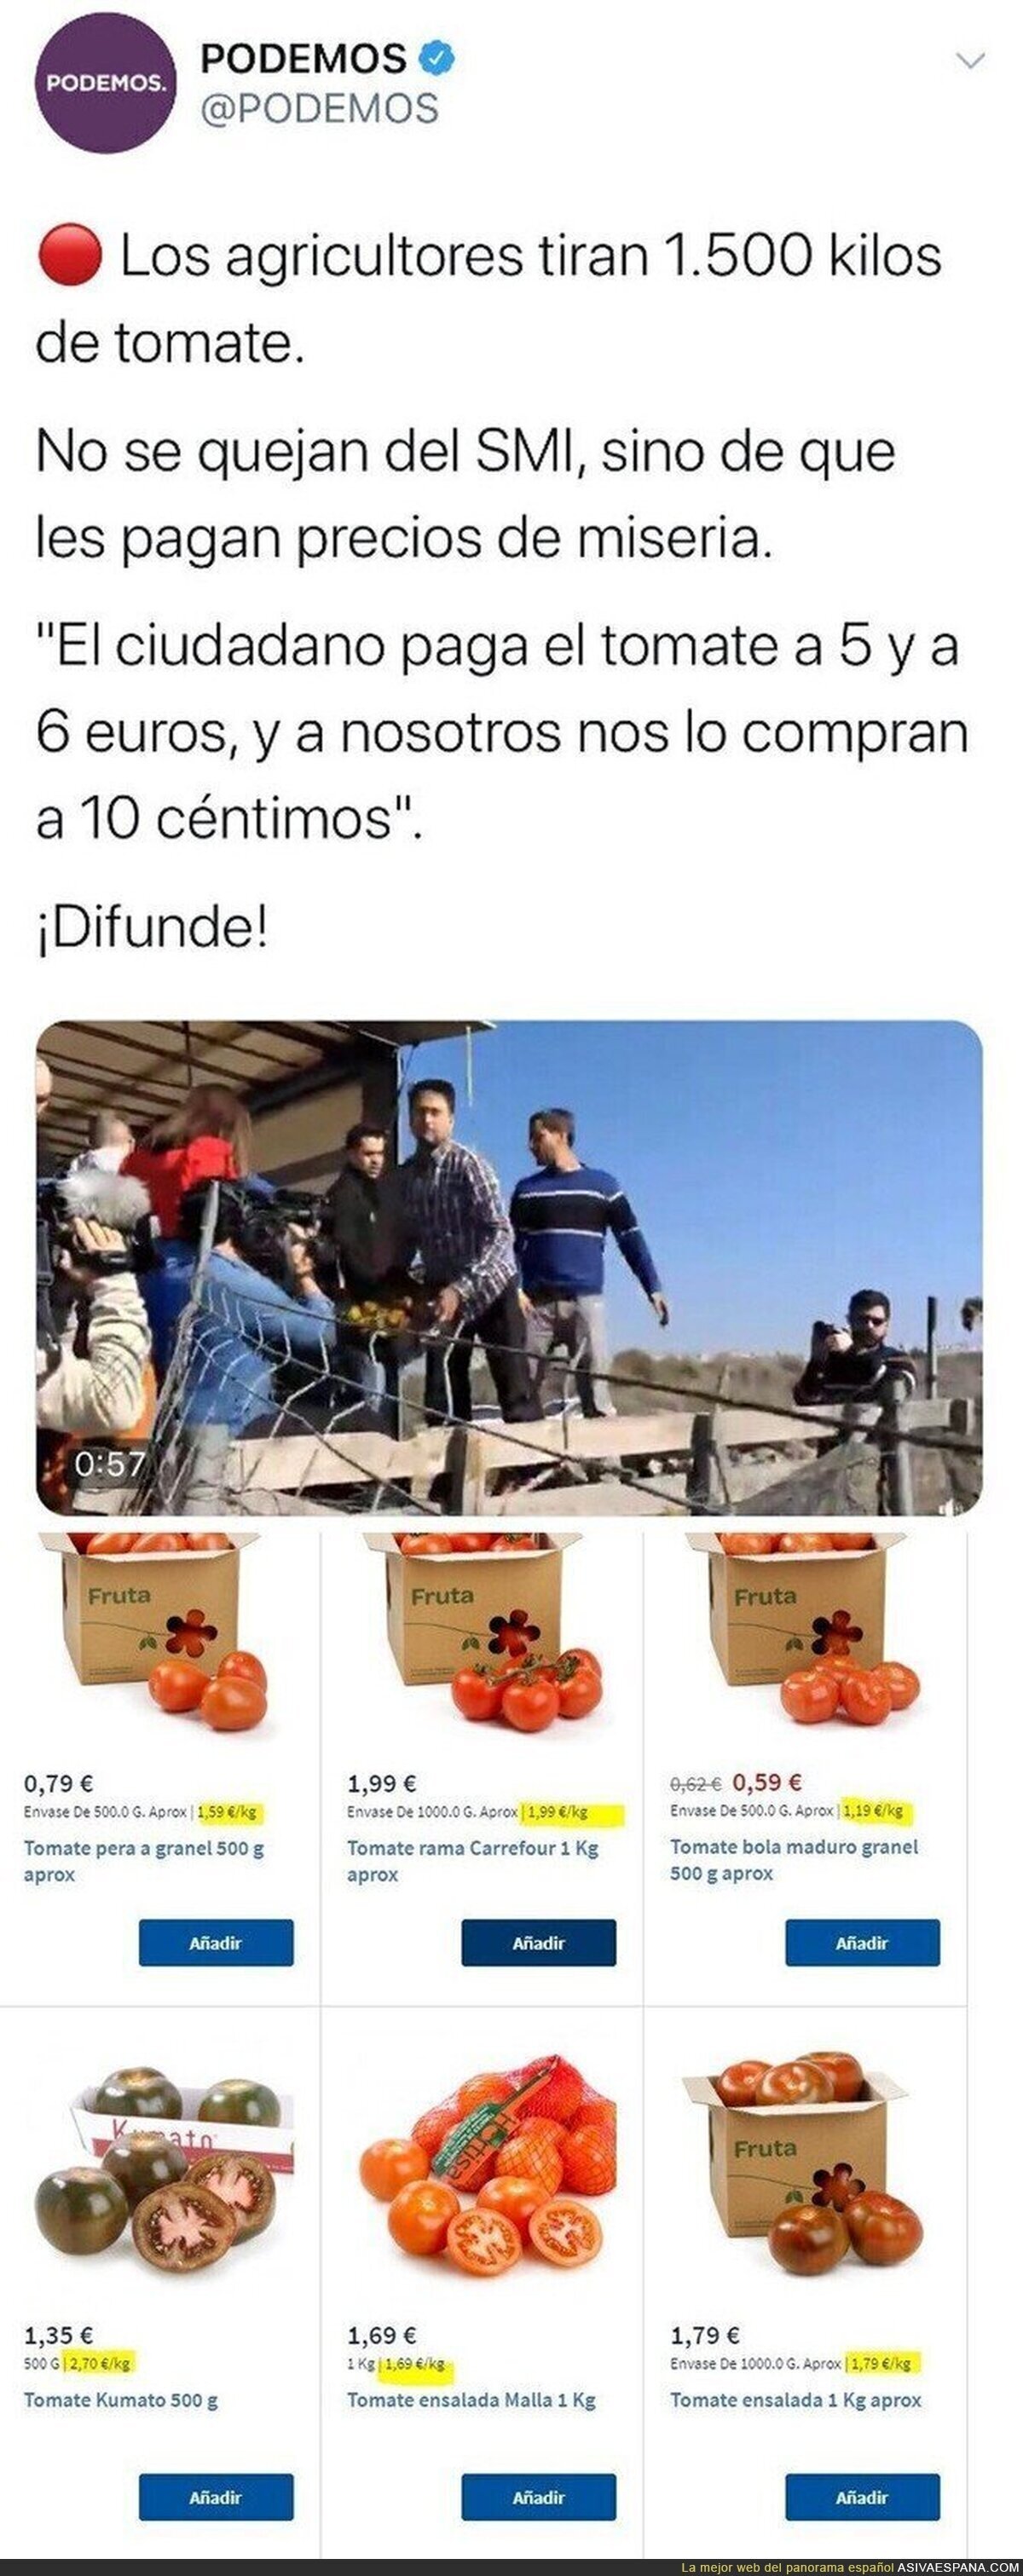 ¿Qué tipo de tomates compran los de Podemos?